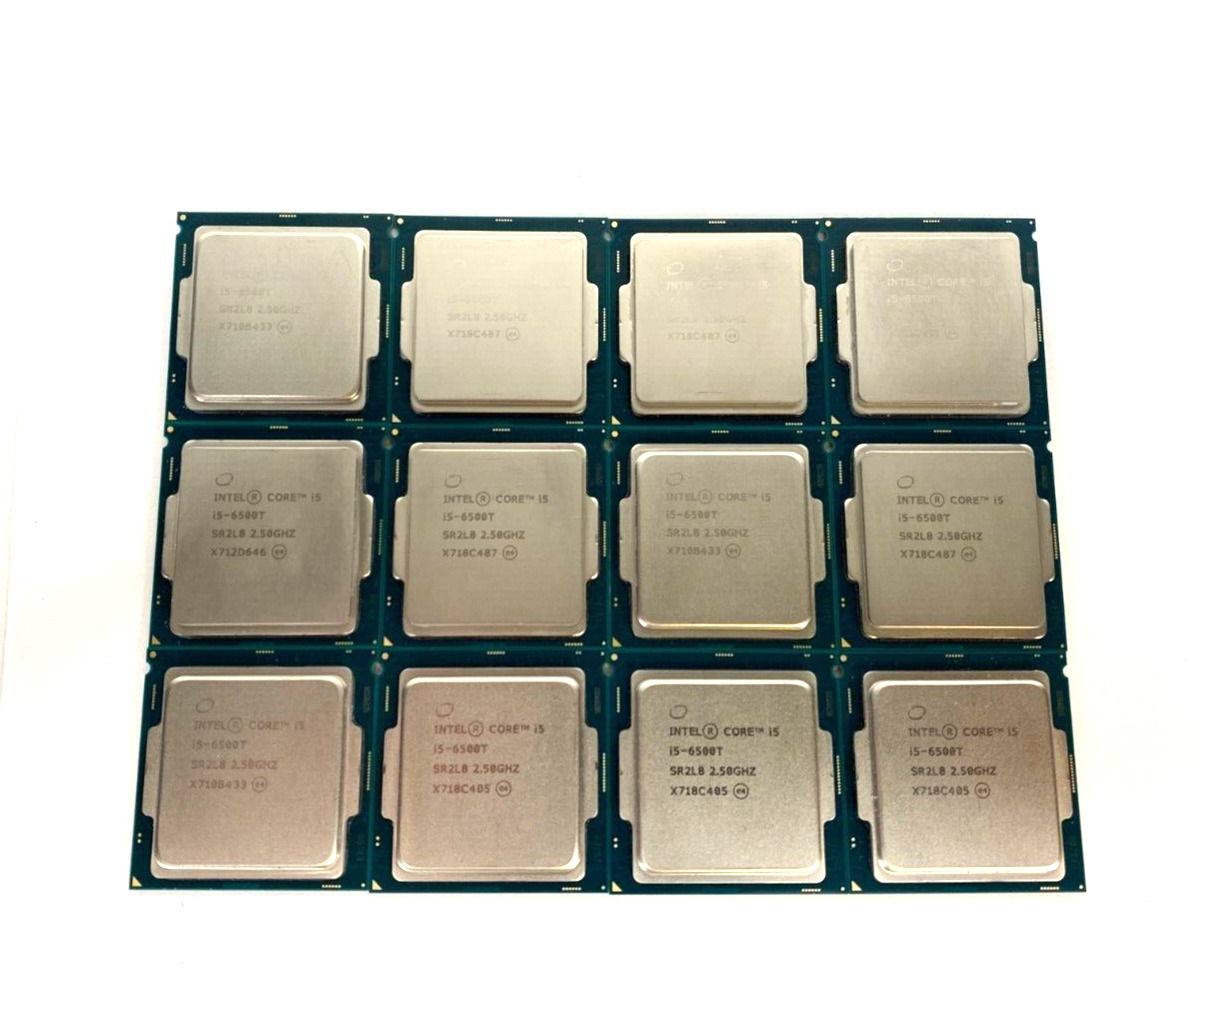 (Lot of 12) Intel Core i5-6500T SR2L8 2.50GHz 6MB Cache Desktop CPU Processors